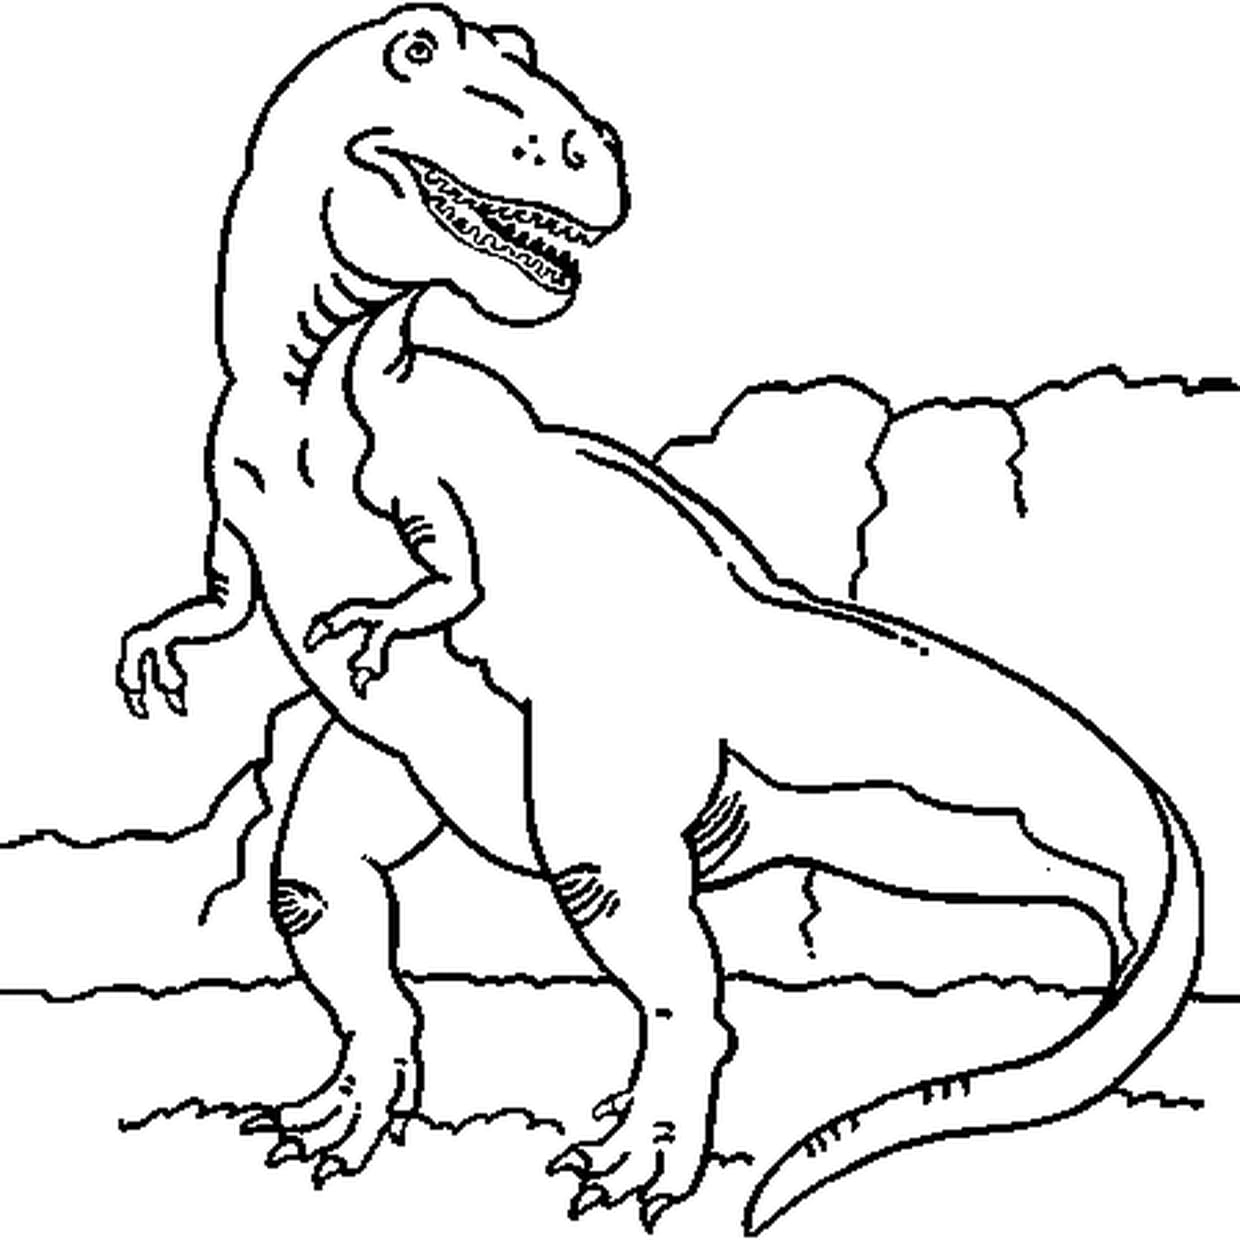 Динозавр рекс раскраска для детей